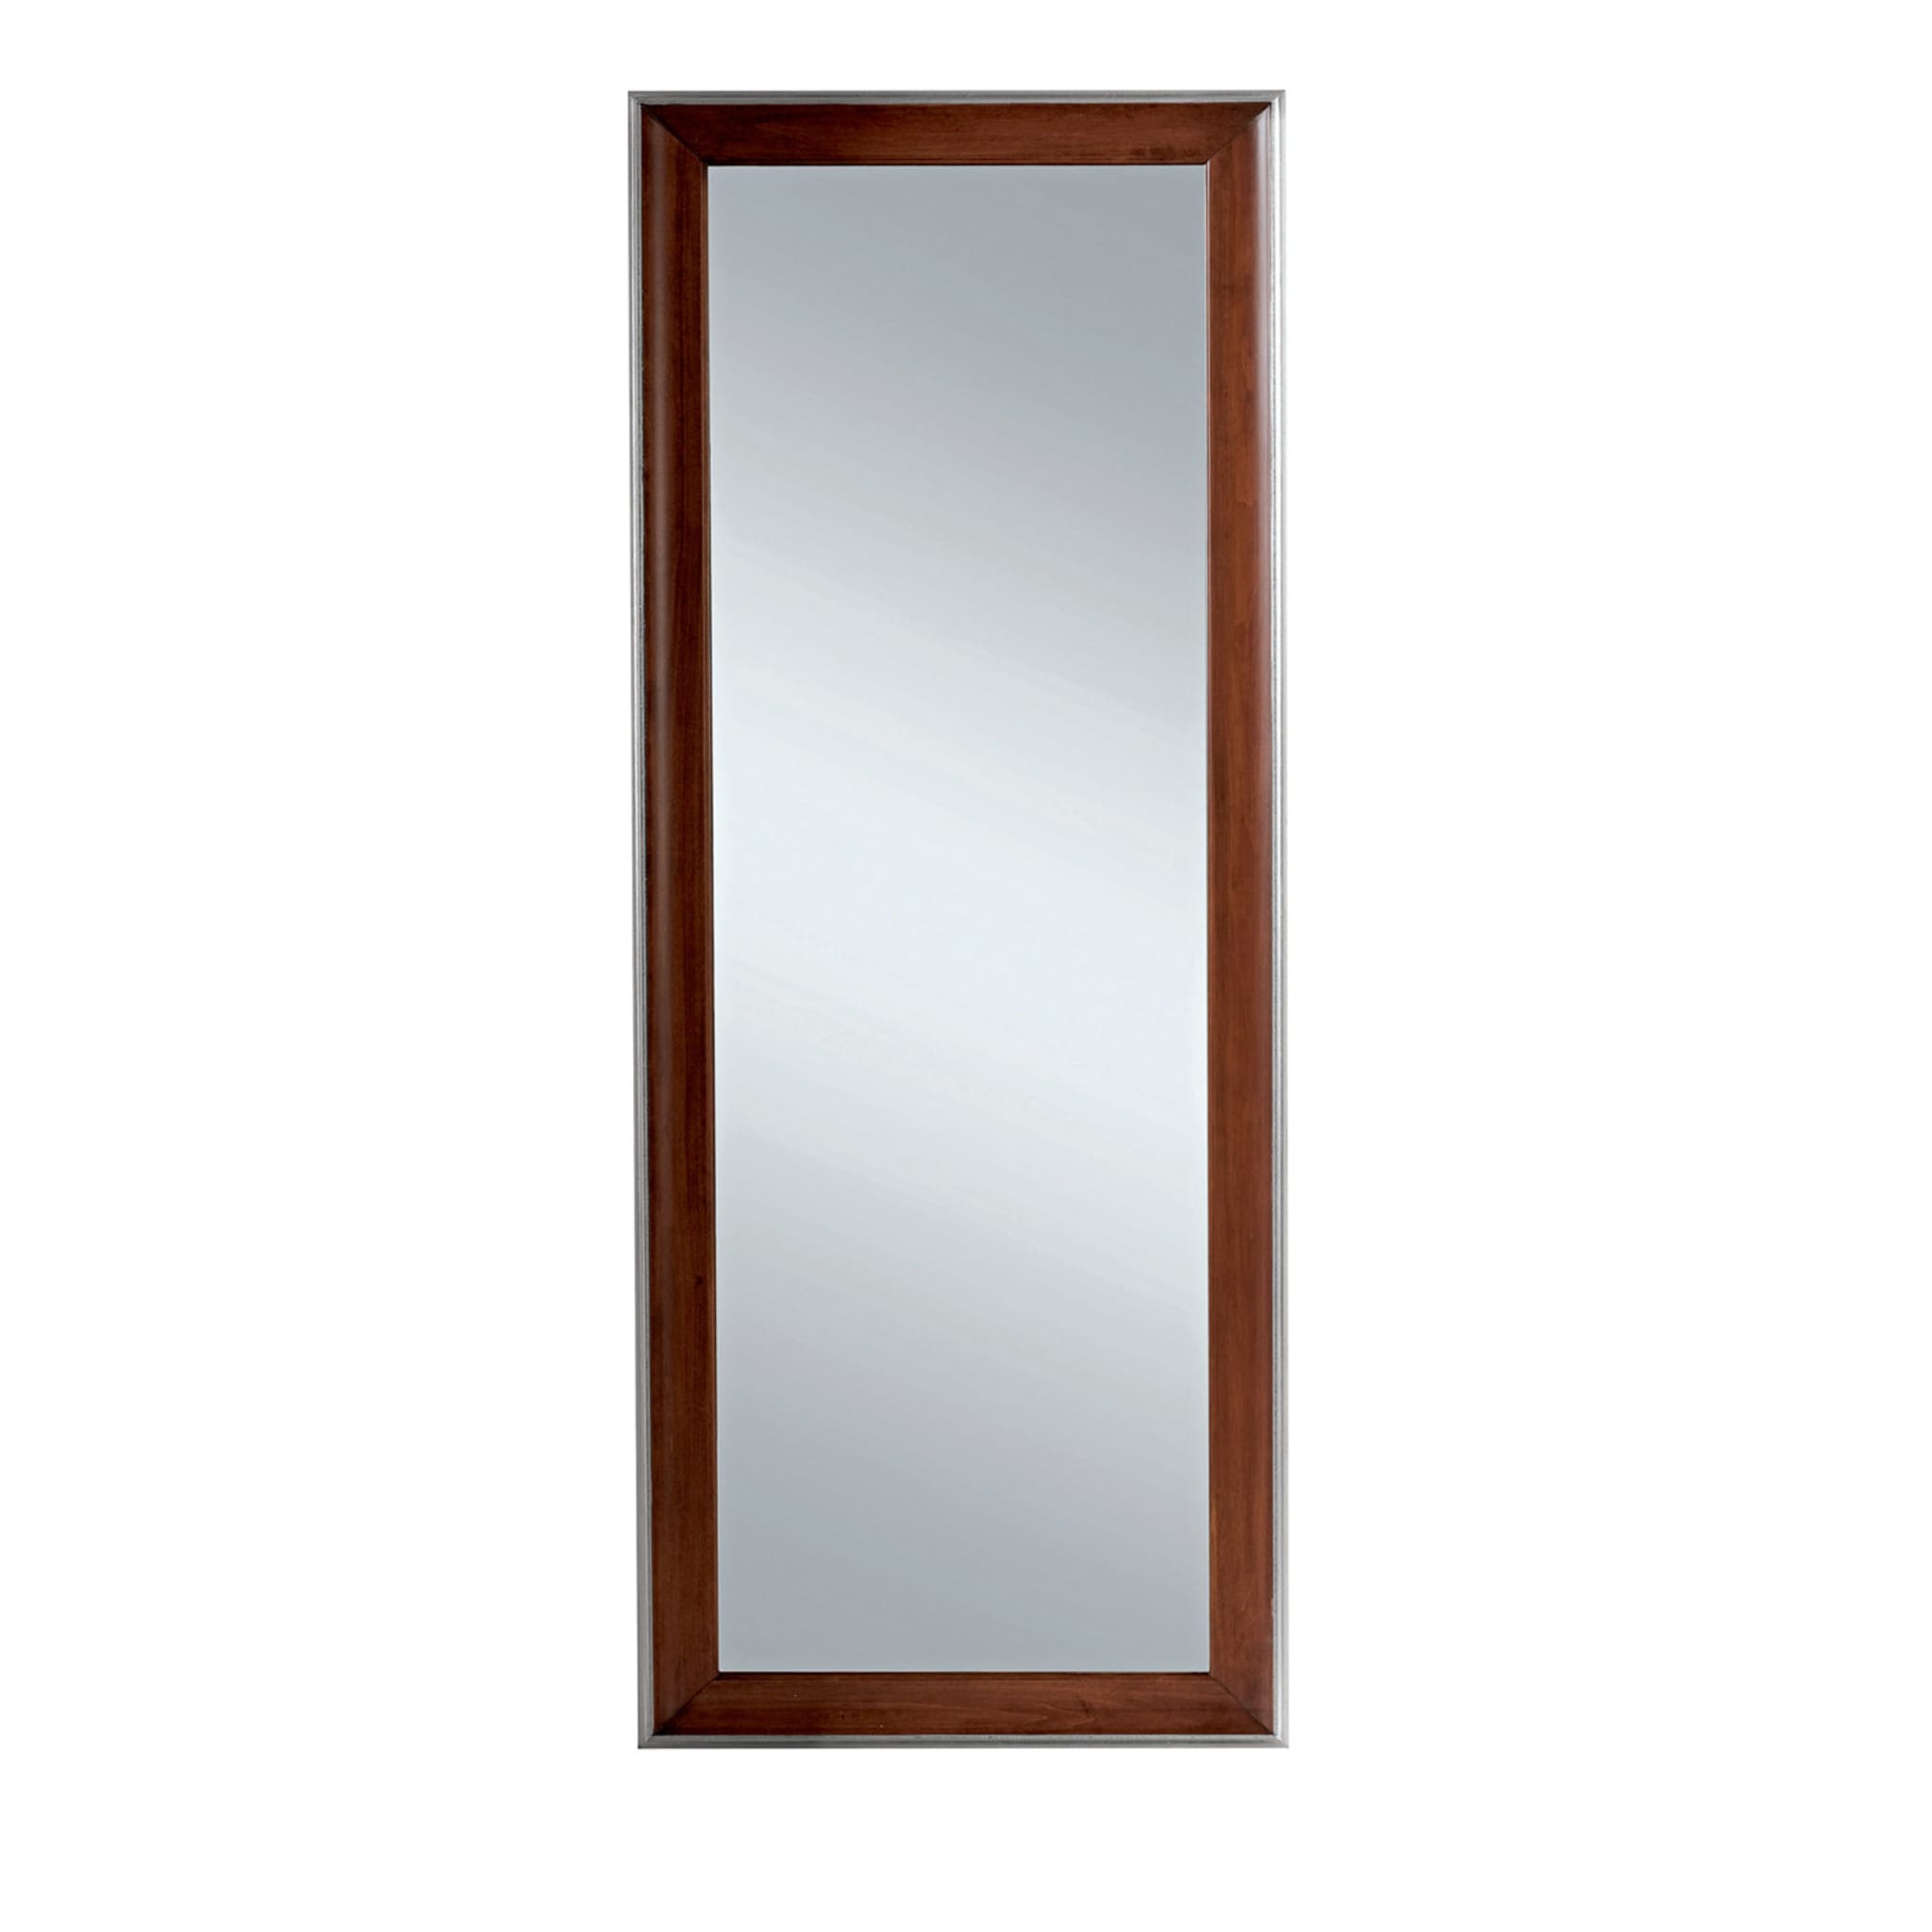 Rechteckiger Spiegel mit braunem Holzrahmen - Hauptansicht